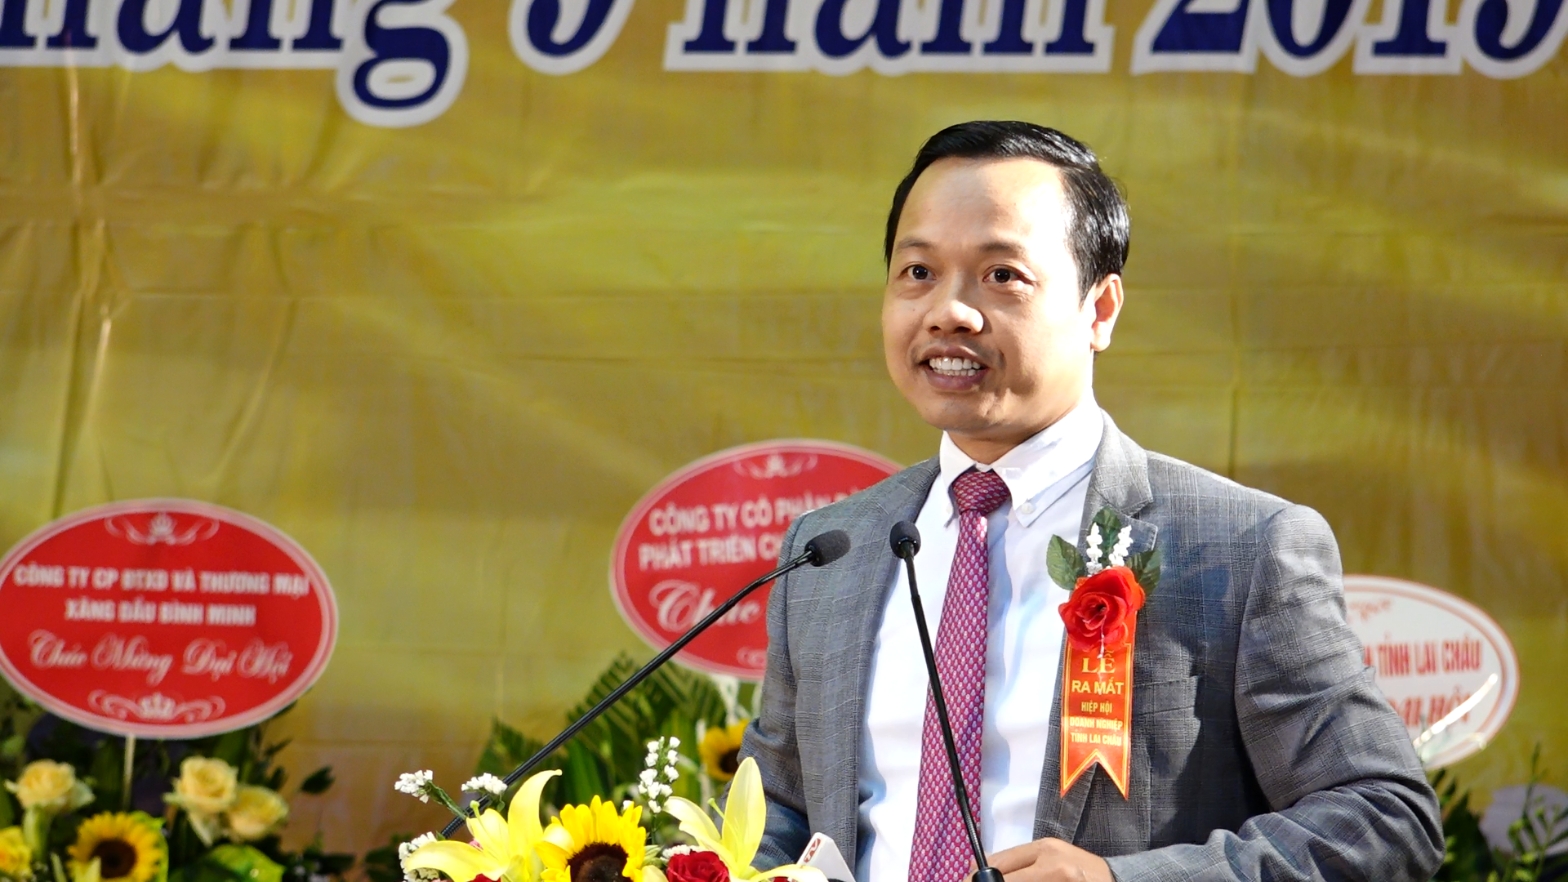 Ông Trần Tiến Dũng, Chủ tịch UBND tỉnh Lai Châup/Phát biểu tại buổi Lễ ra mắt Hiệp Hội Doanh nghiệp tỉnh